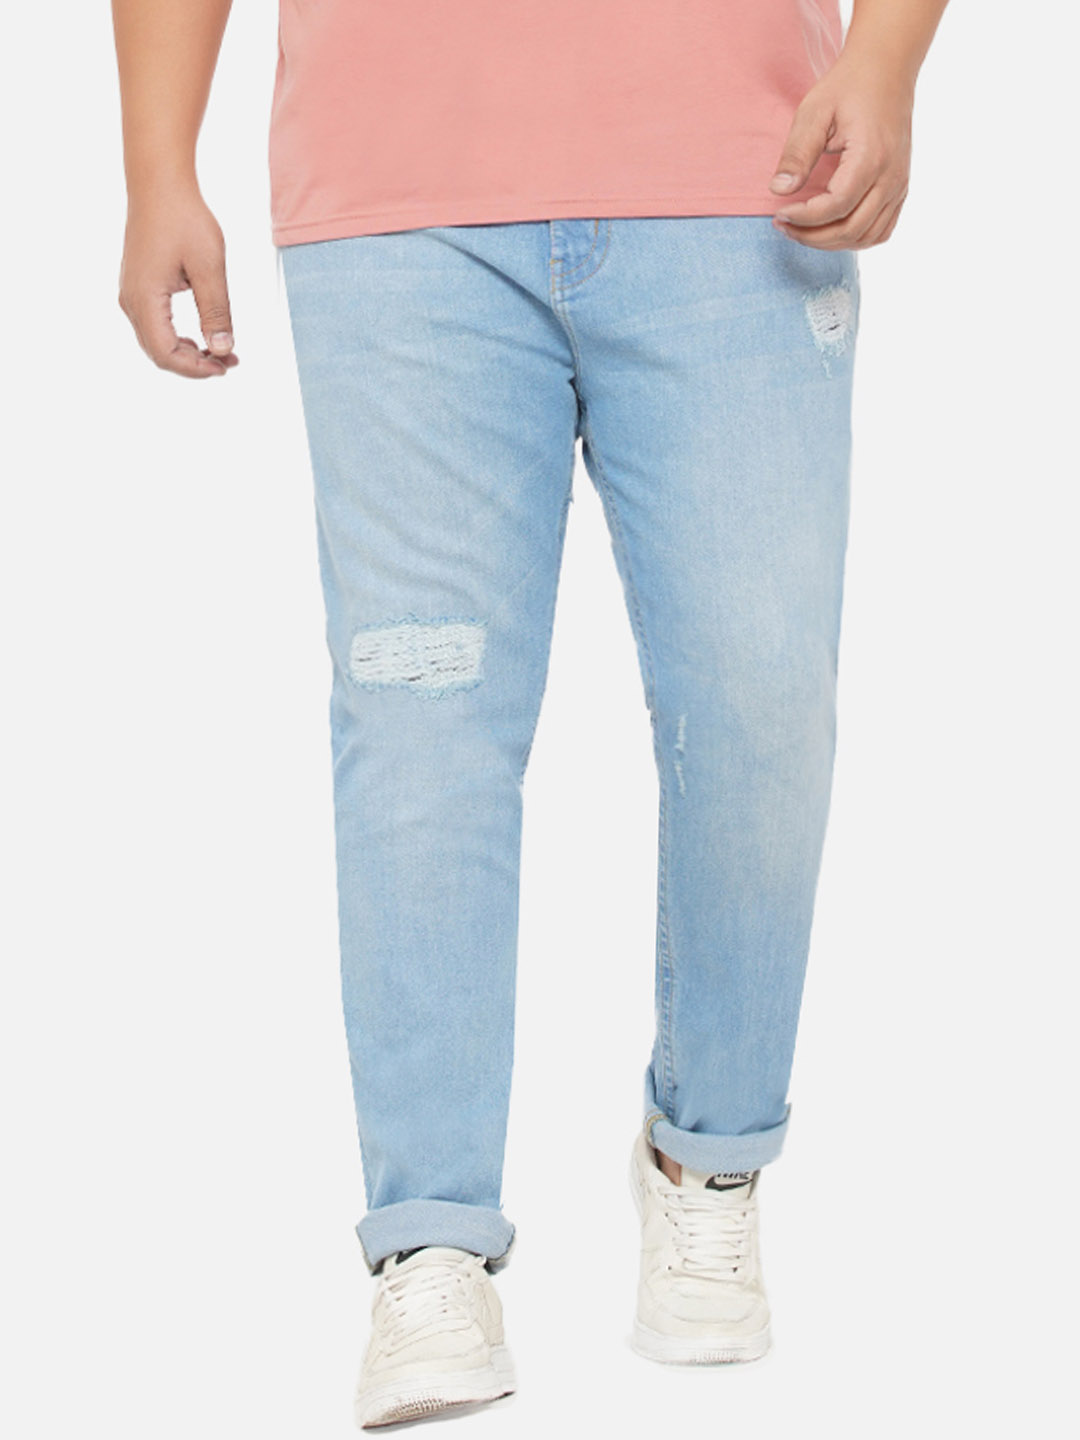 bottomwear/jeans/EJPJ25070/ejpj25070-1.jpg